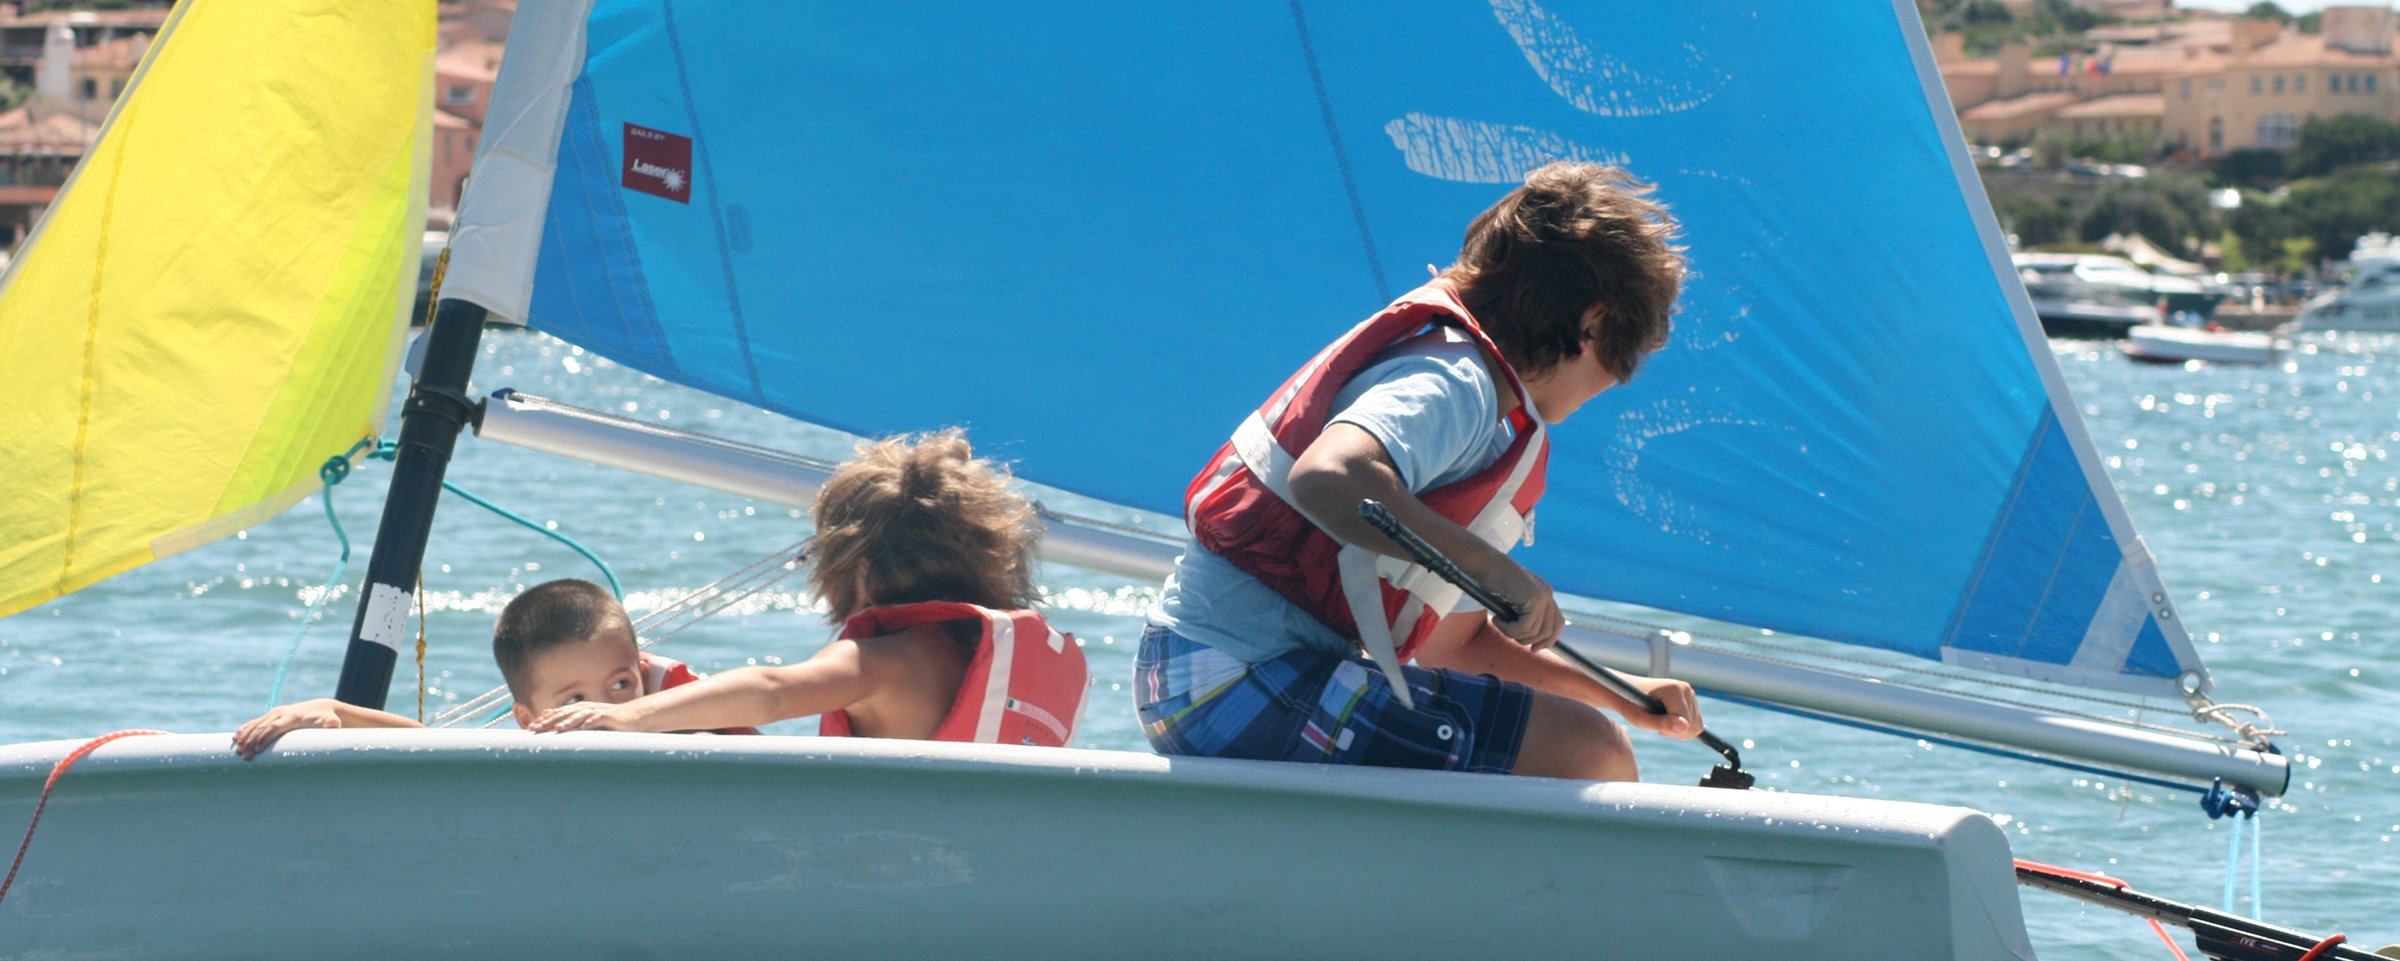 YCCS Sailing School - 3 - Yacht Club Costa Smeralda